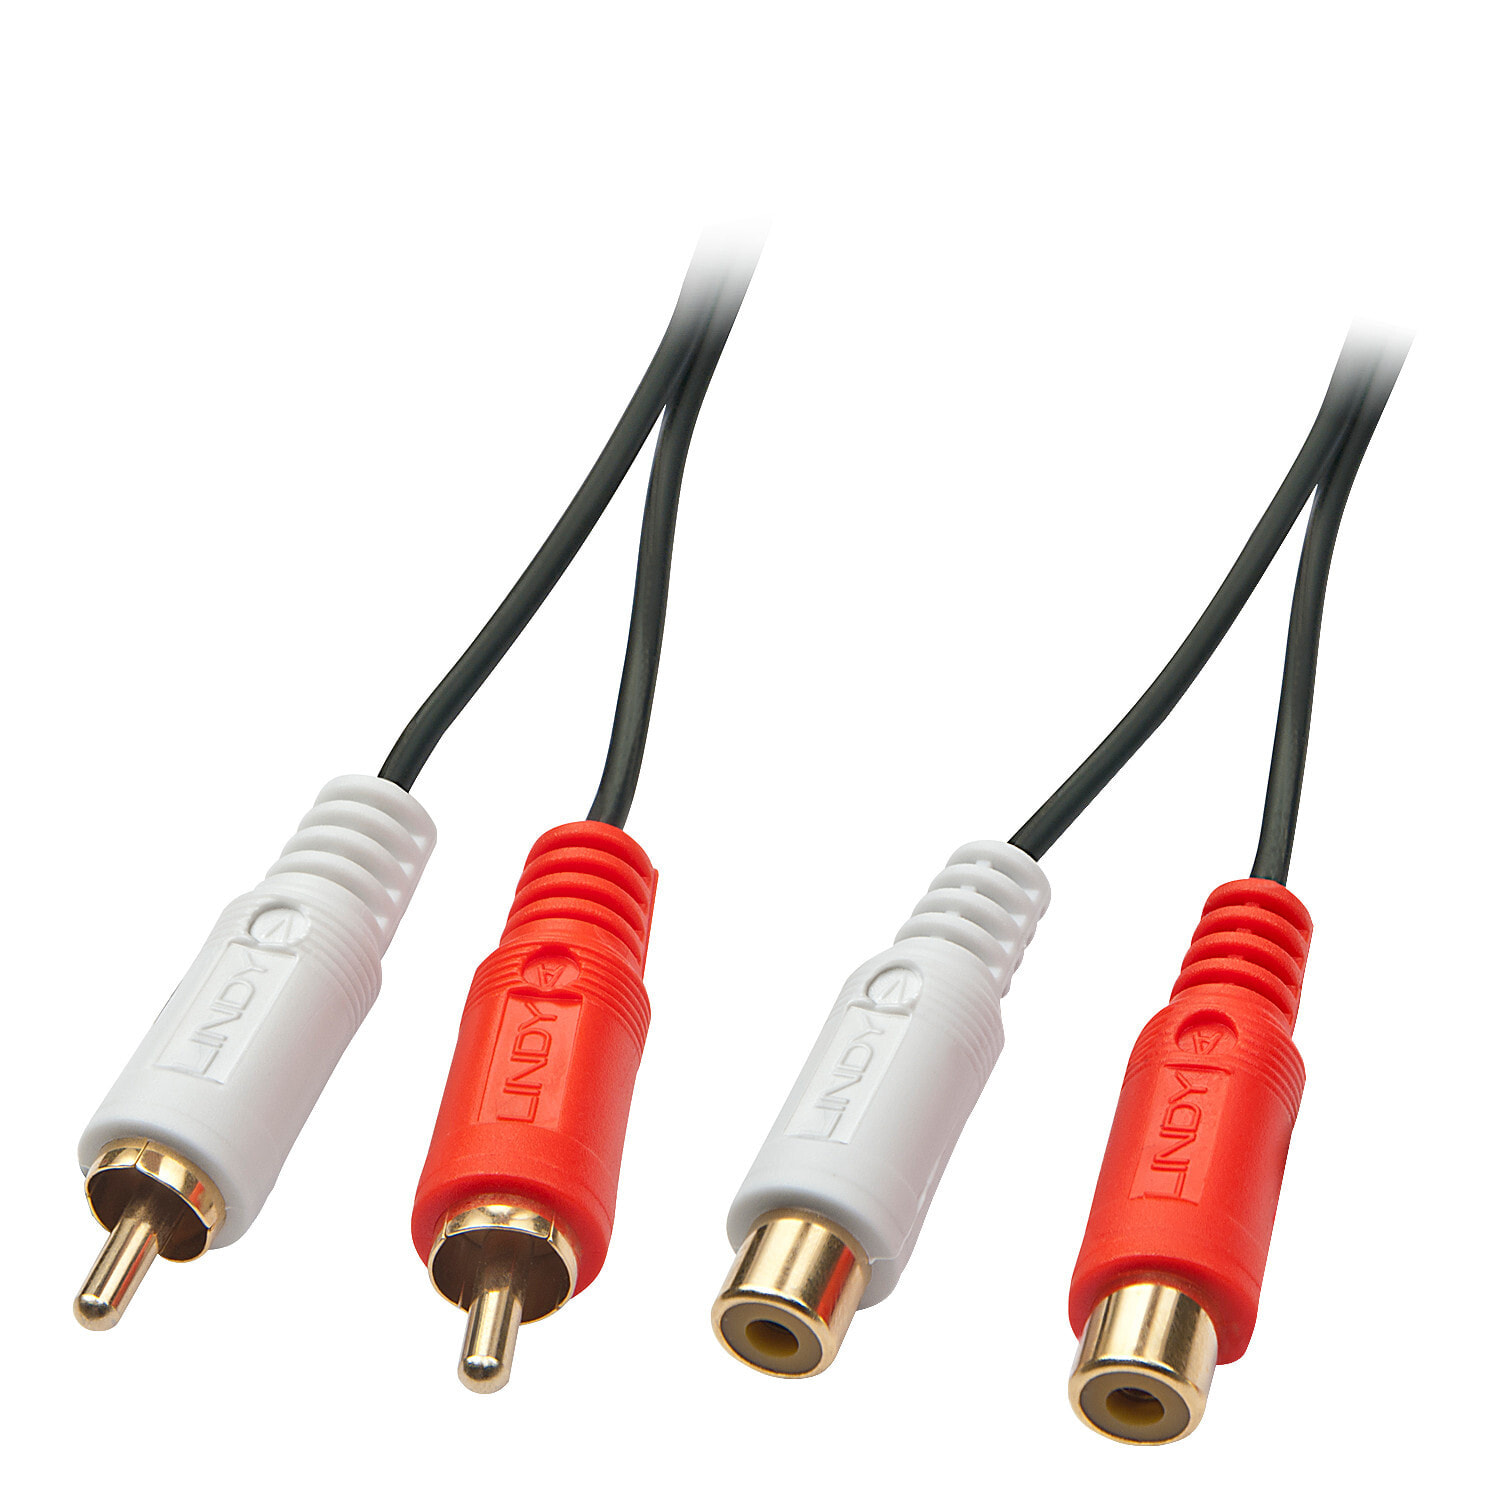 Lindy 35671 аудио кабель 2 m 2 x RCA Черный, Красный, Белый